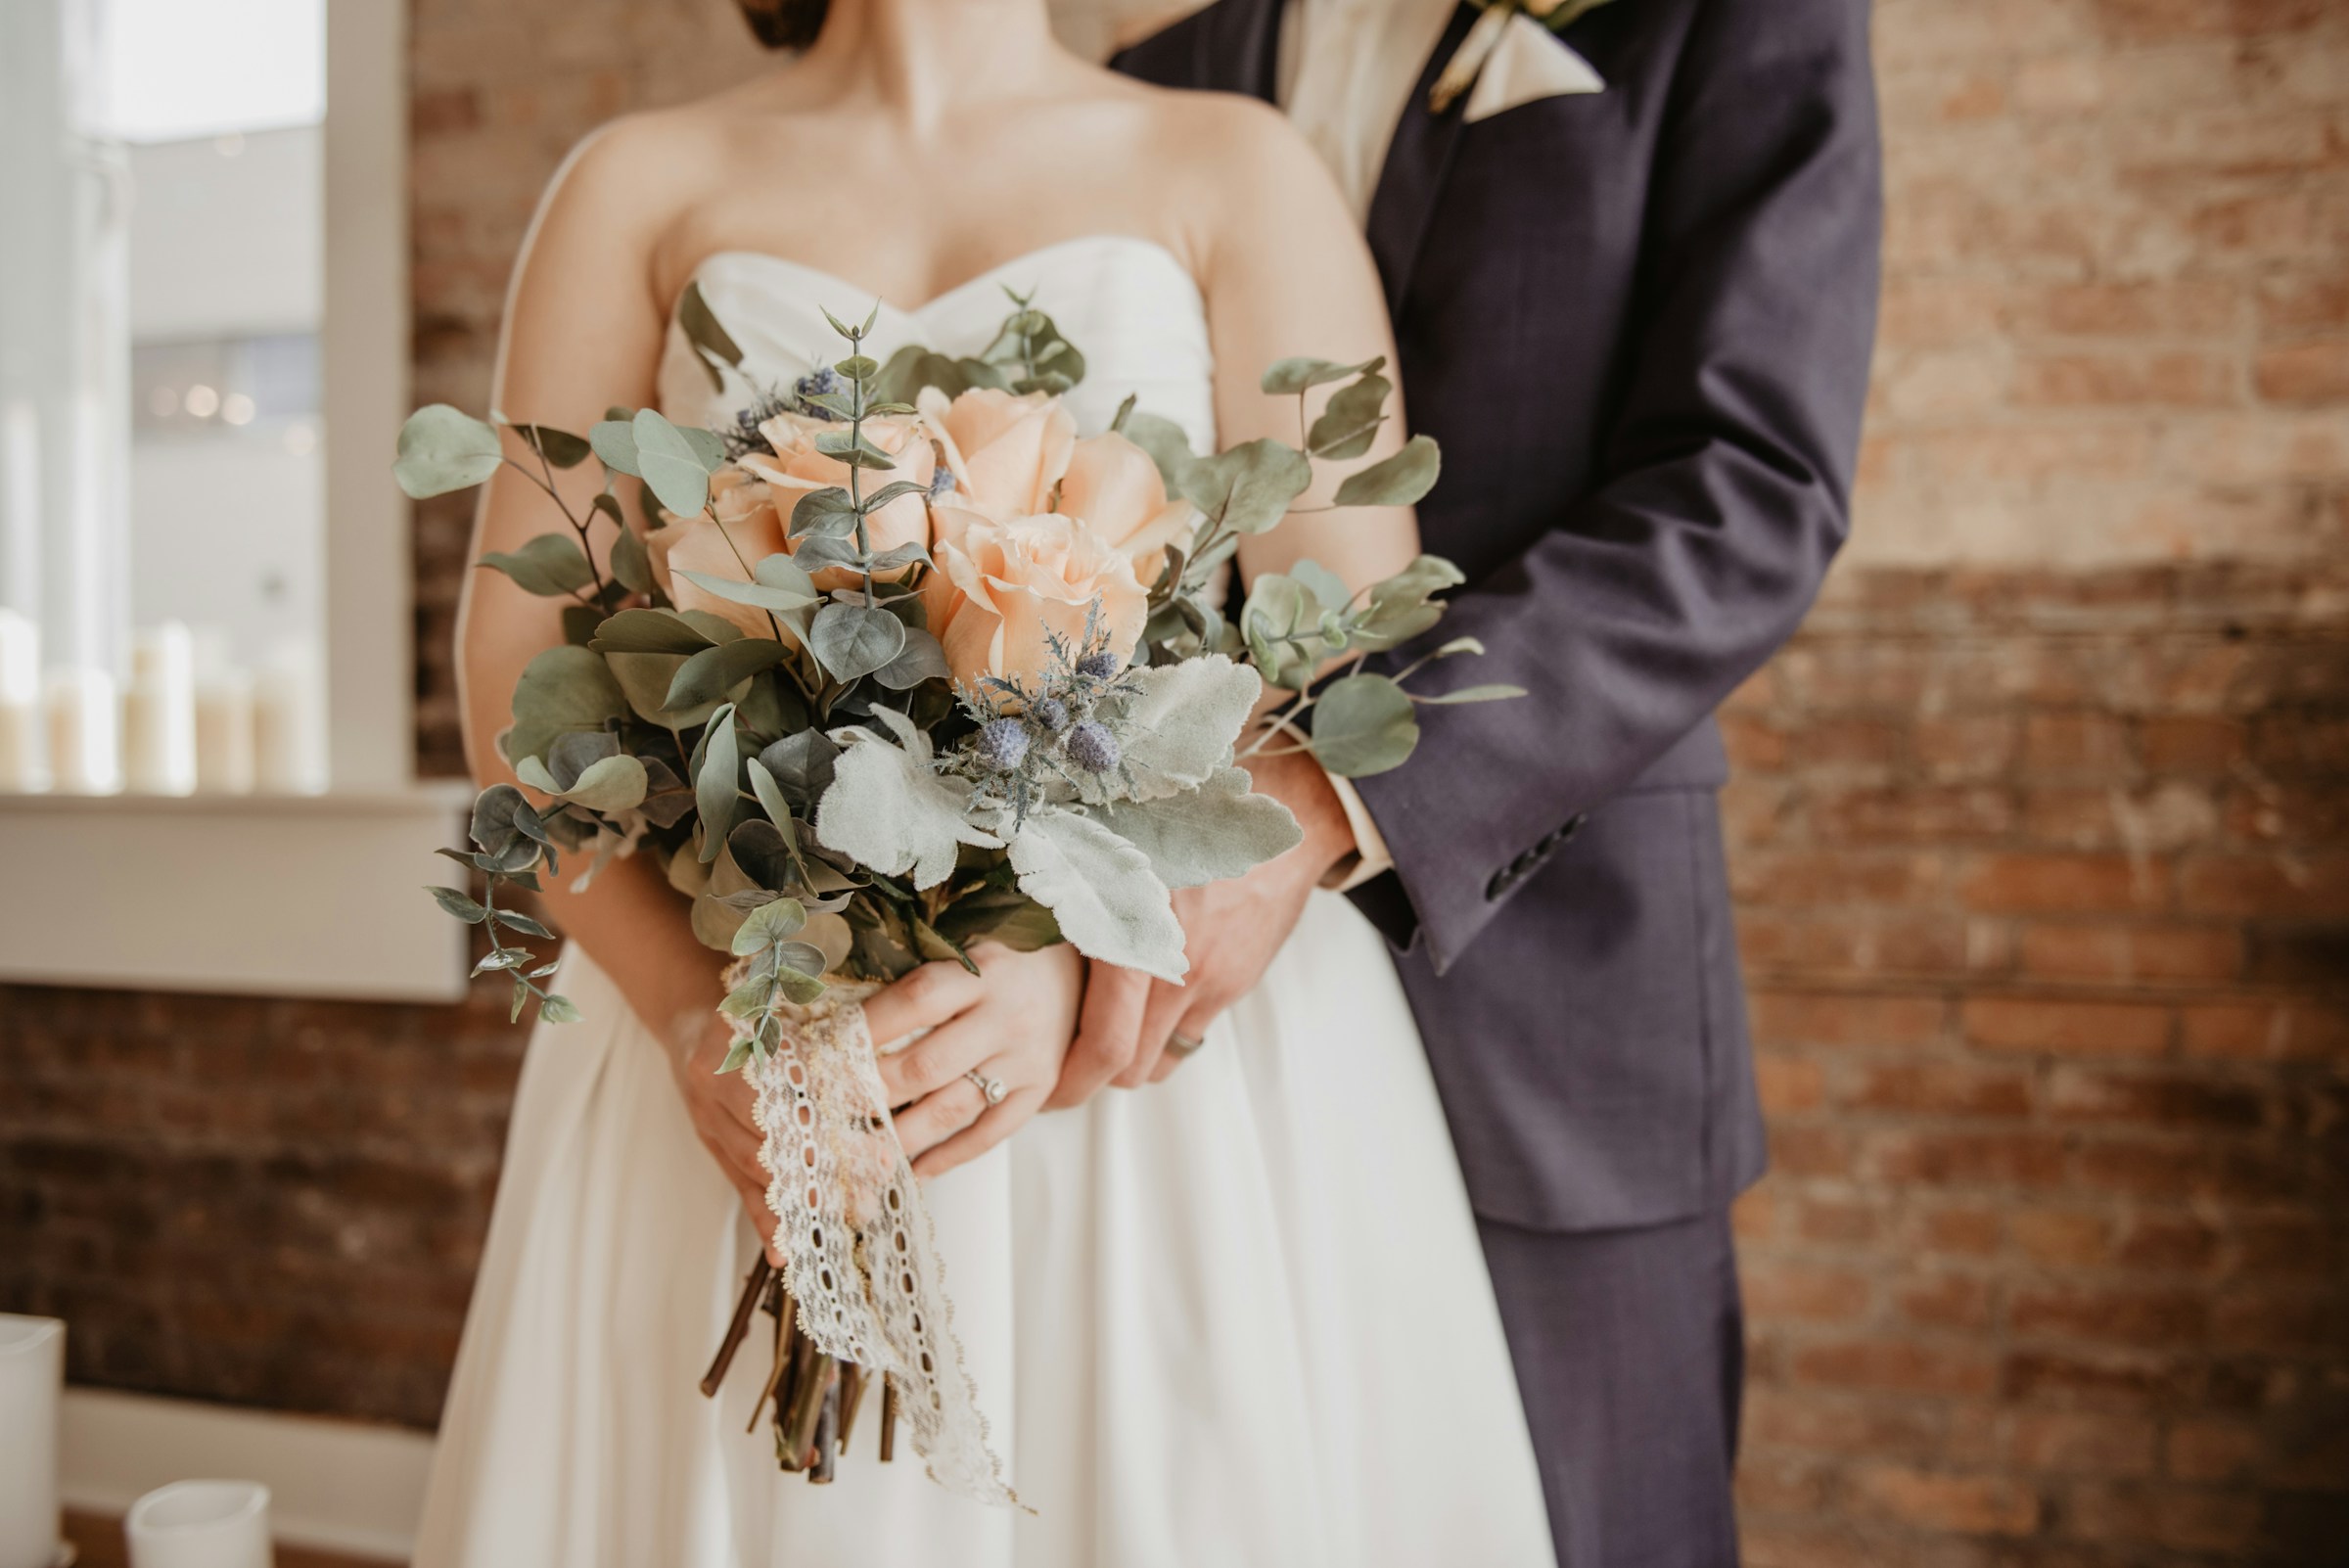 Eine Braut und ein Bräutigam halten sich an den Händen | Quelle: Unsplash